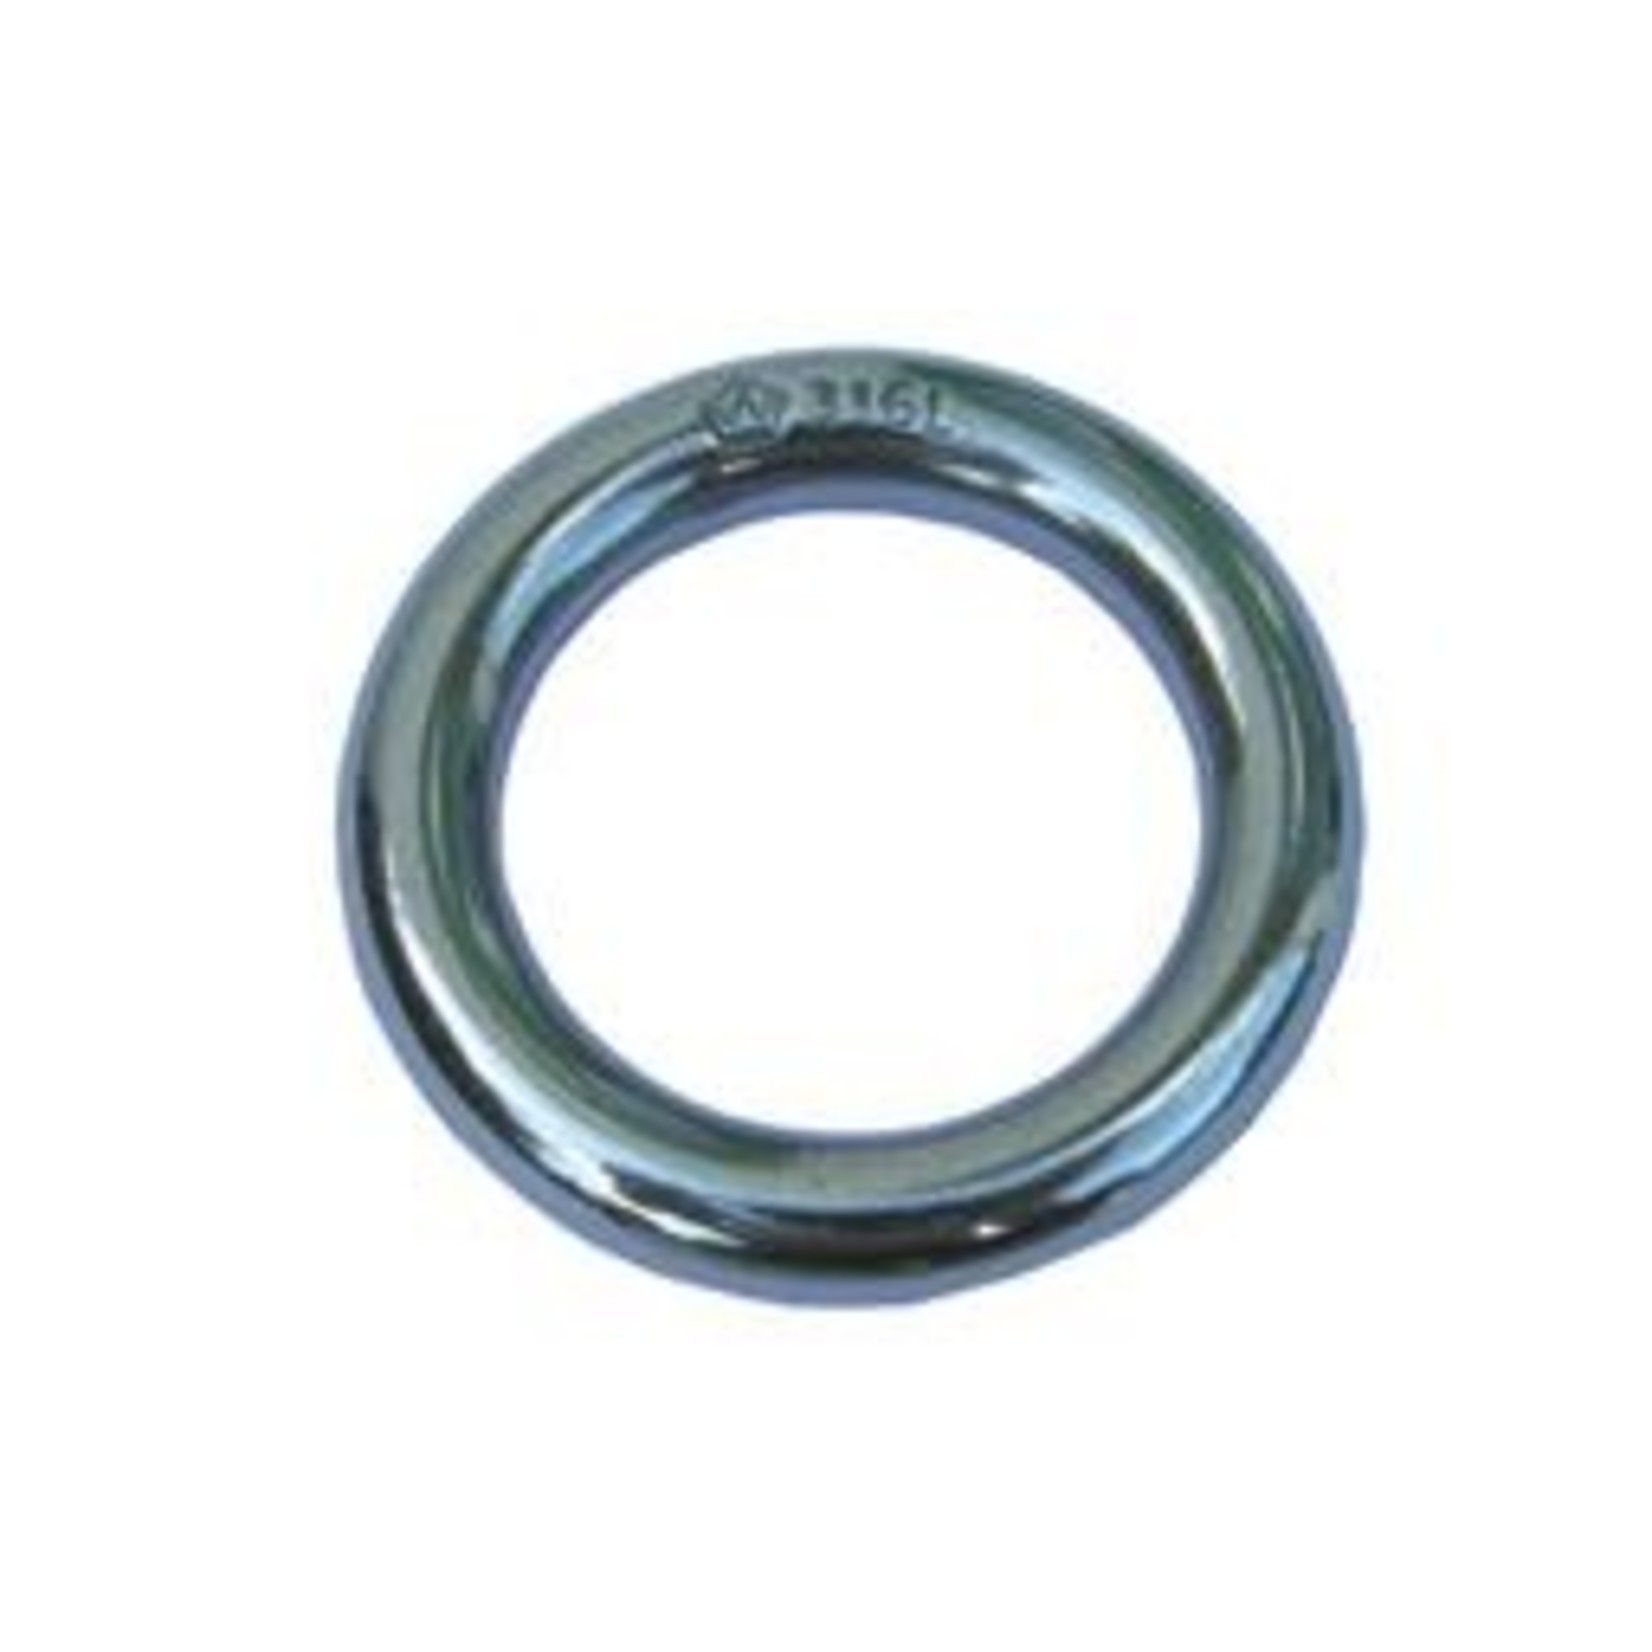 Wichard Ring - 316L - Stock dia: 5 mm - Inner dia: 33 mm